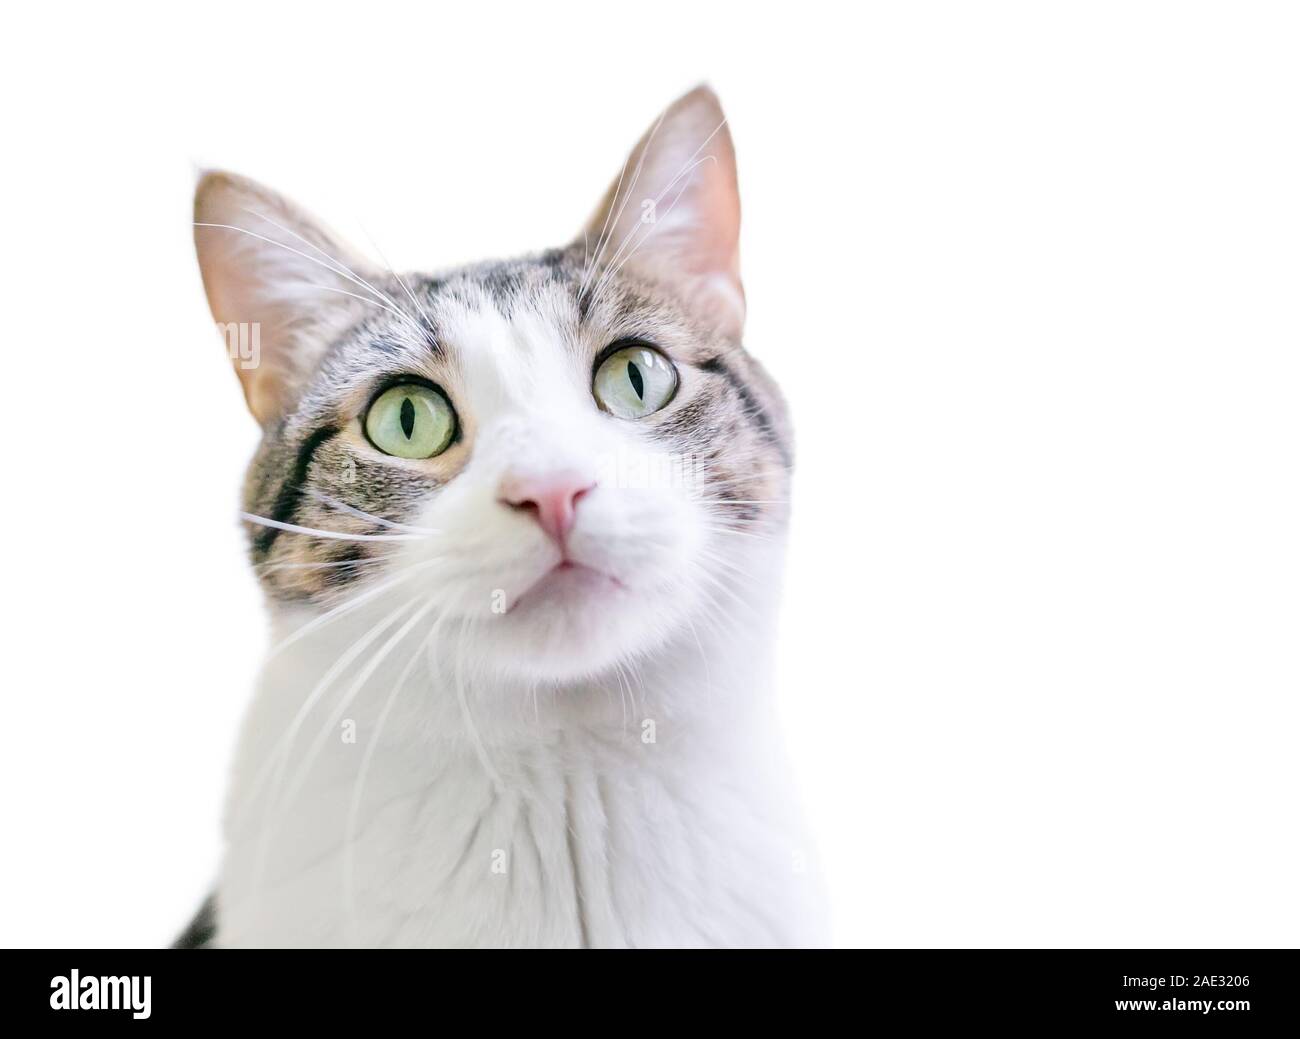 Un chat domestique shorthair tabby avec blanc et vert et les yeux, le regard vers le haut Banque D'Images